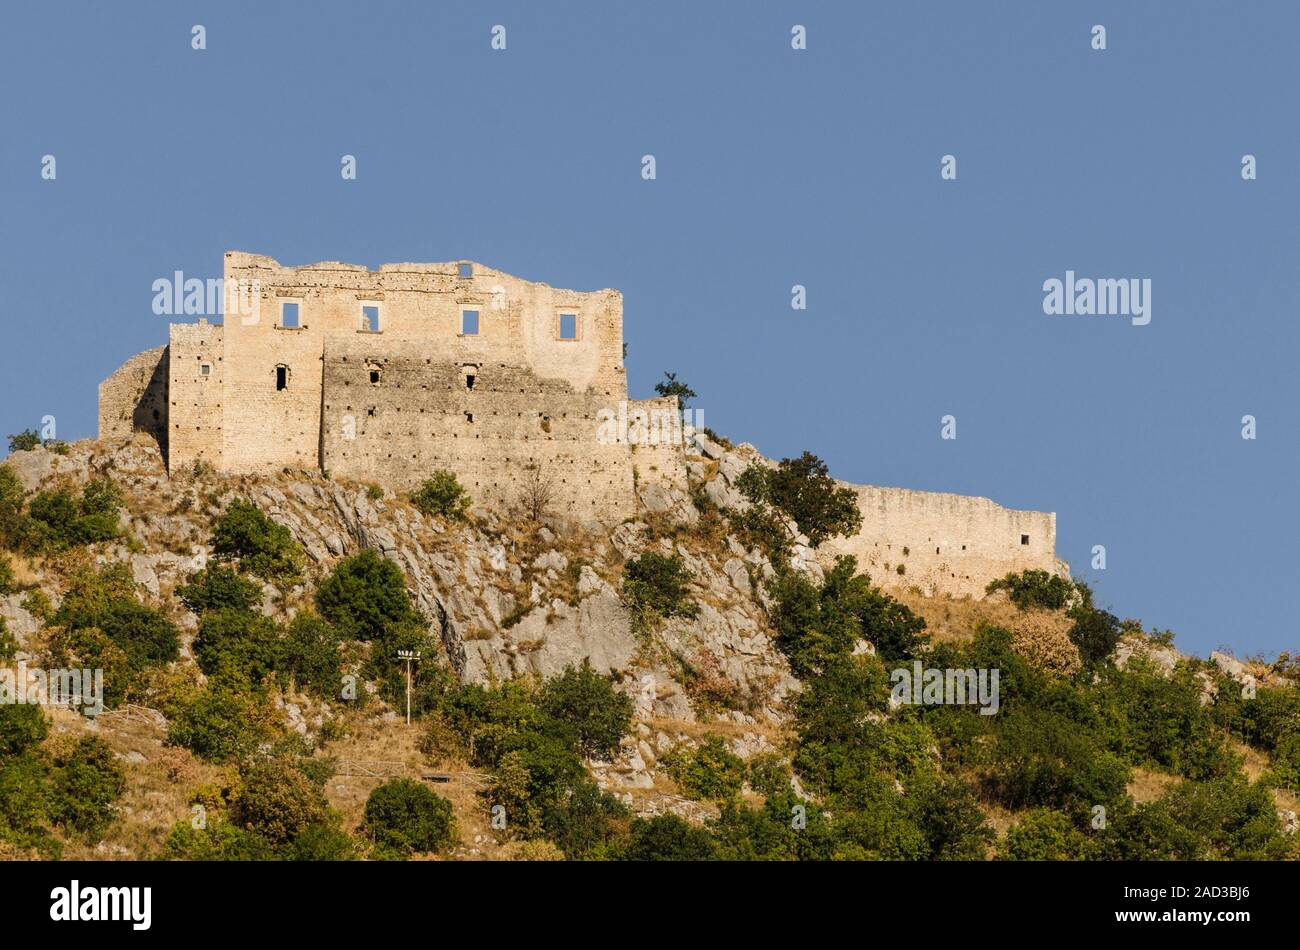 View of the d'Evoli castle in Castropignano Stock Photo